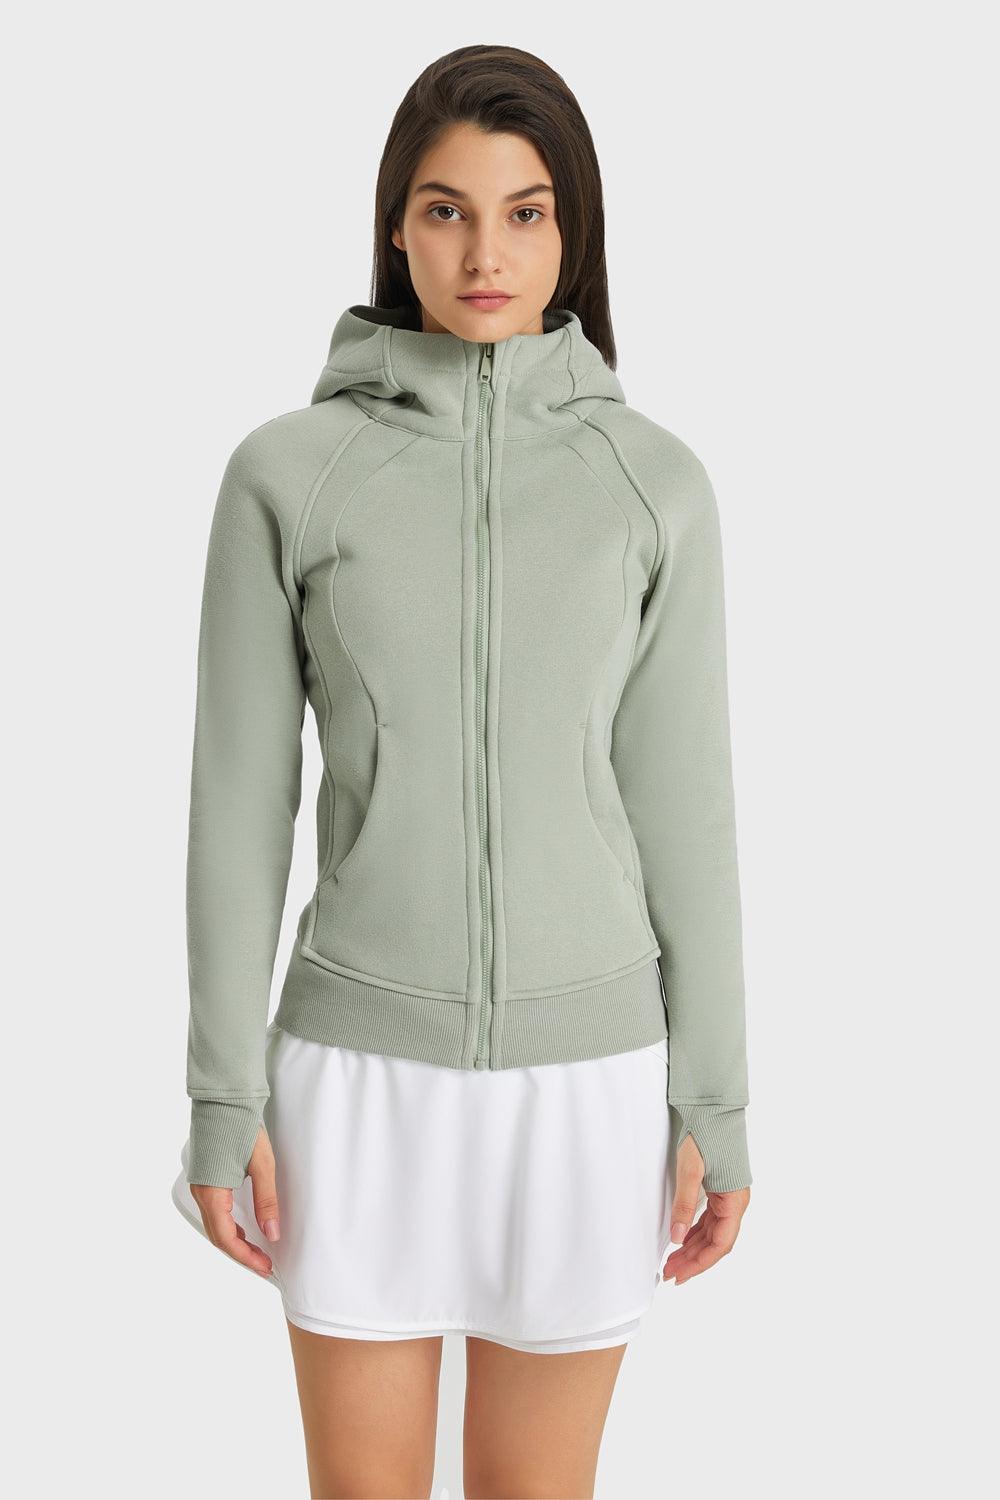 Zip Up Seam Detail Hooded Sports Jacket - BELLATRENDZ